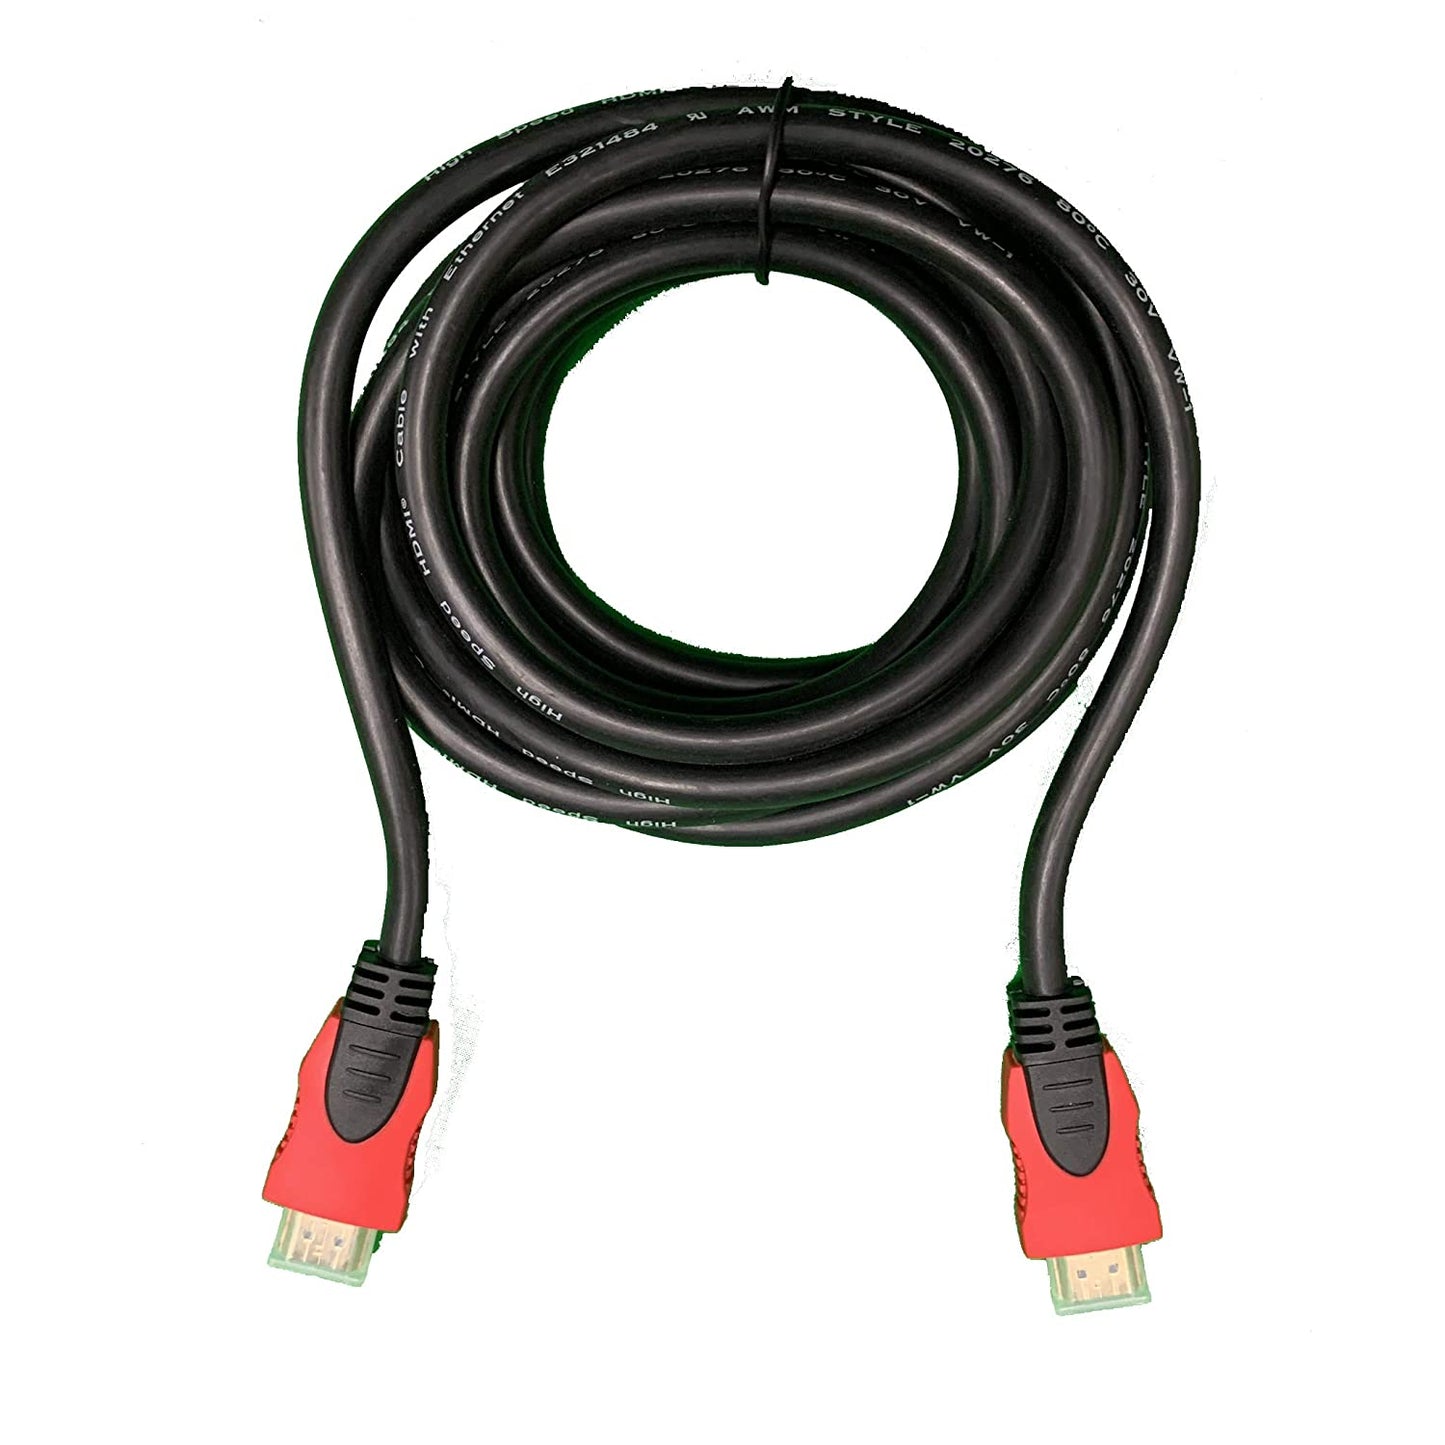 Photon Cable Cable HDMI ultrarrápido de 12 pies chapado en oro 14,3 gbps 1080p 3D 4kx2k resolución máxima Cable HDMI de 12 pies - HDMI 2.0 conectores chapados en oro 3D para consolas de juegos, televisores, DVD, más 